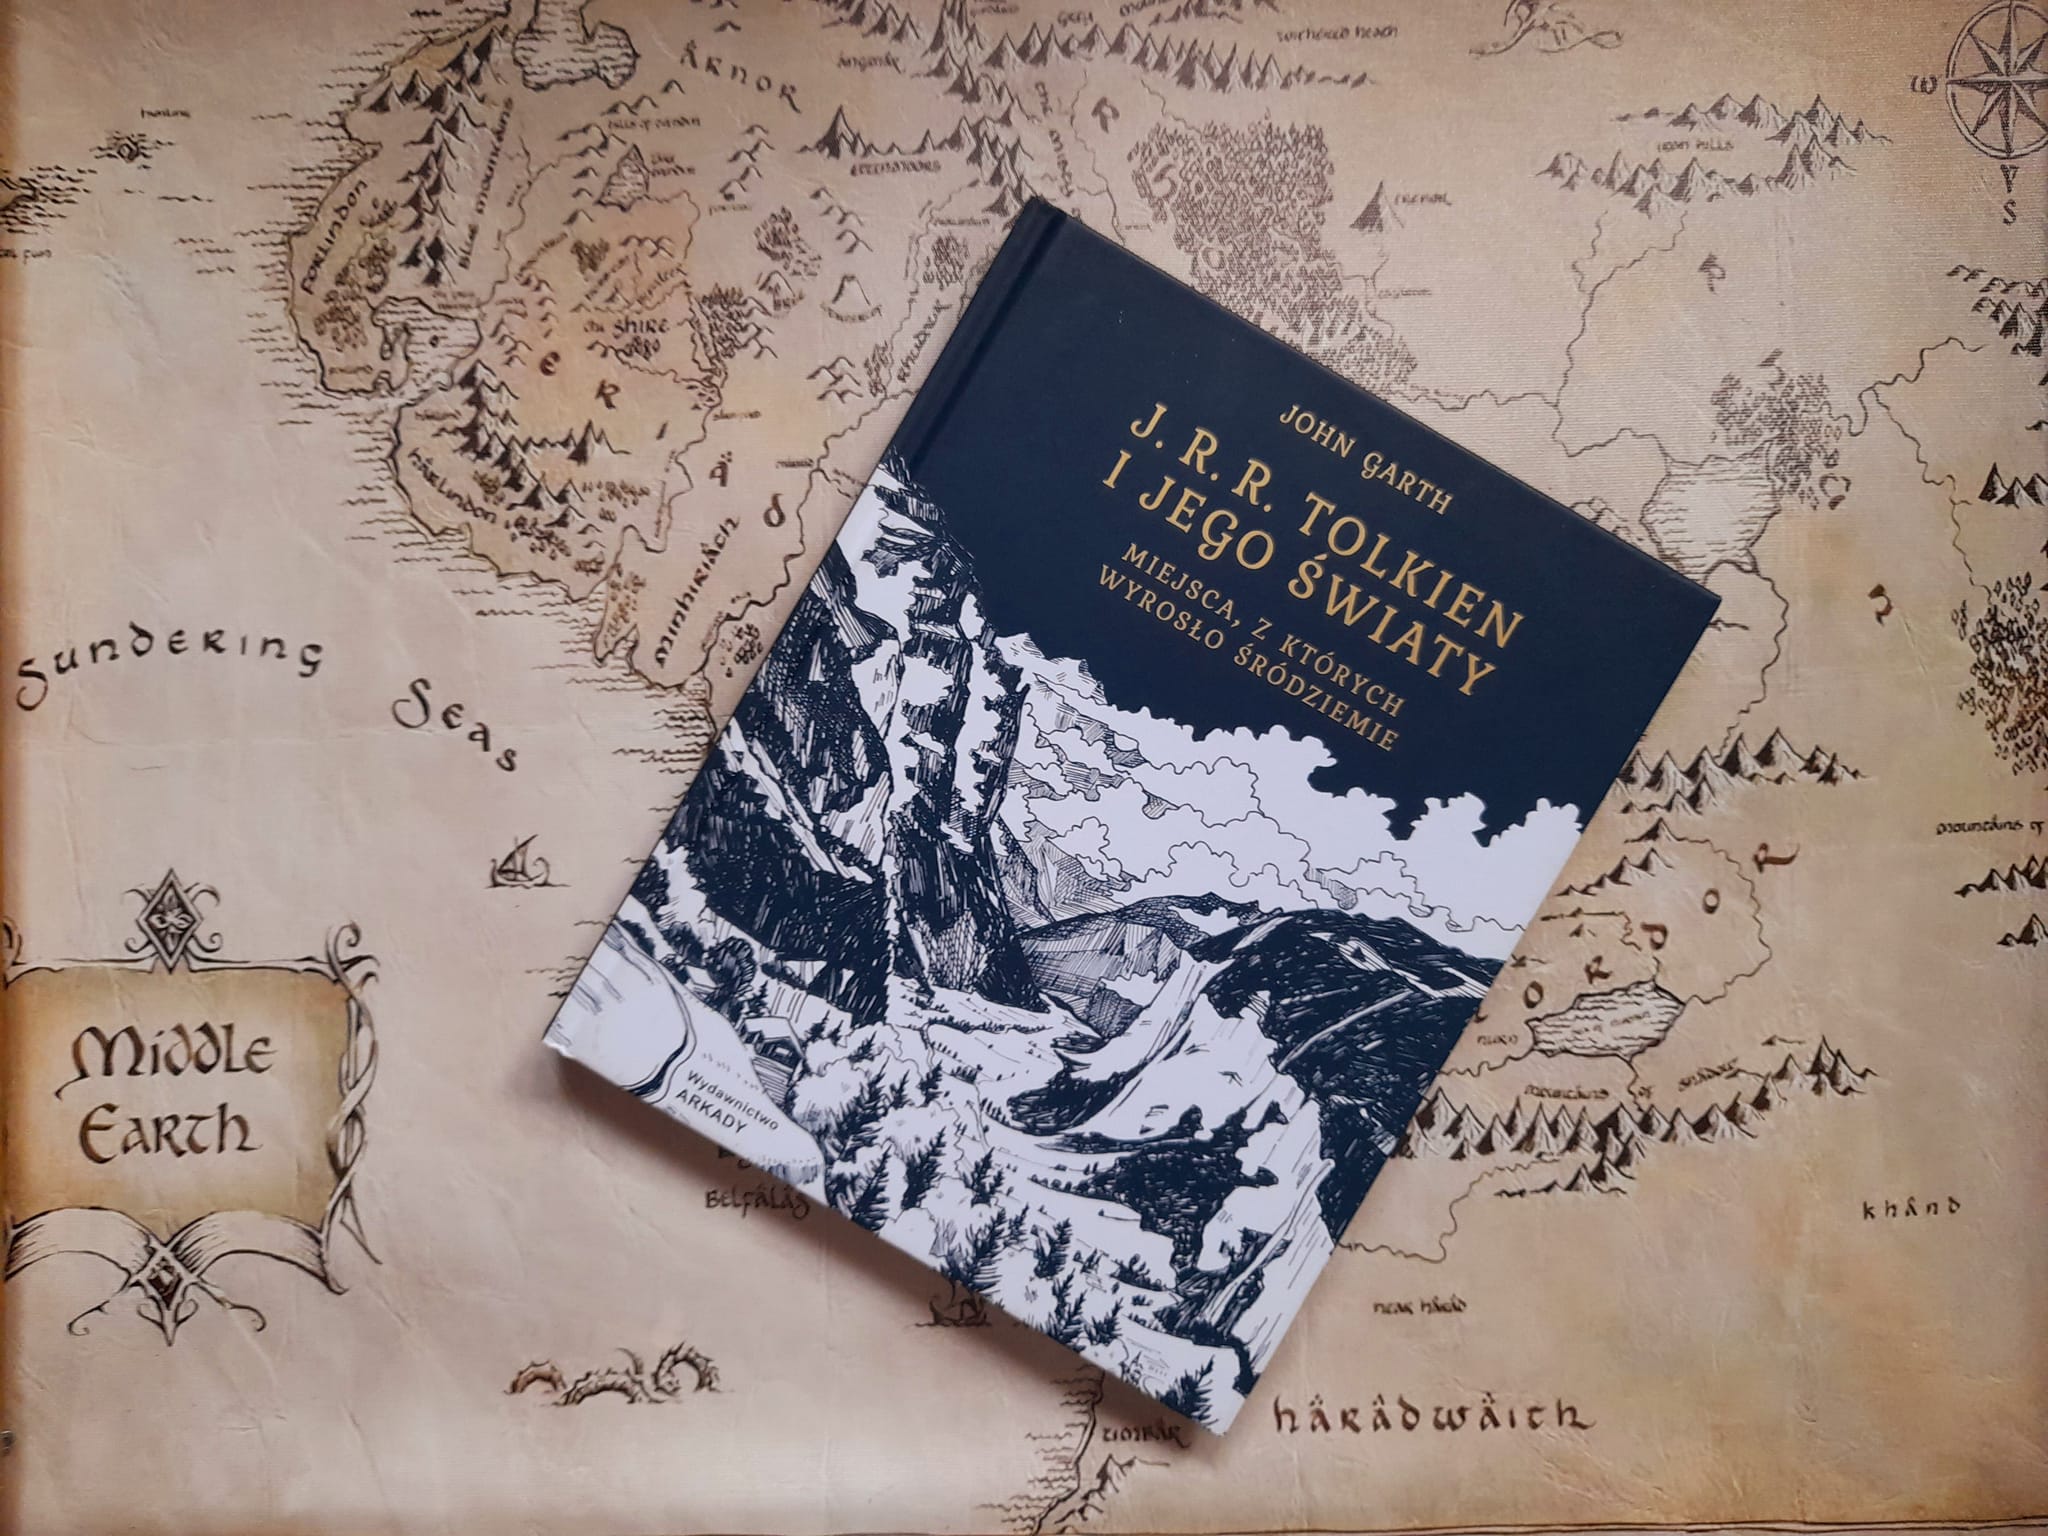 Recenzja: J.R.R. Tolkien i jego światy Arkady 2022